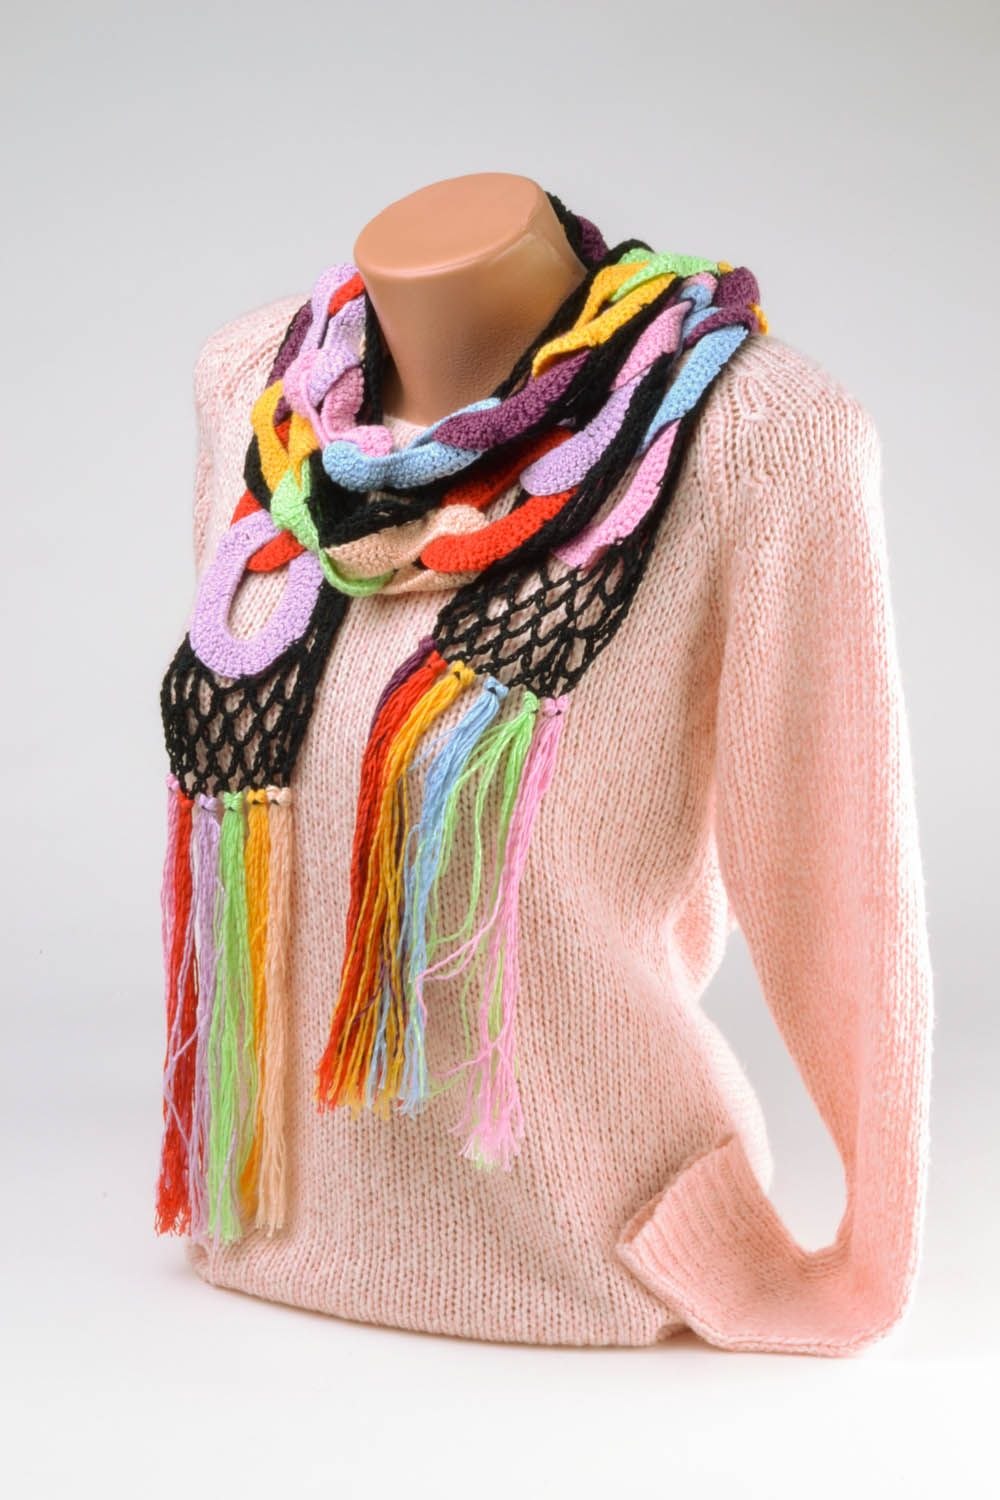 Цветной шарф. Разноцветный шарф. Разноцветный вязаный шарф. Креативный шарфик. Разноцветный шарф спицами.